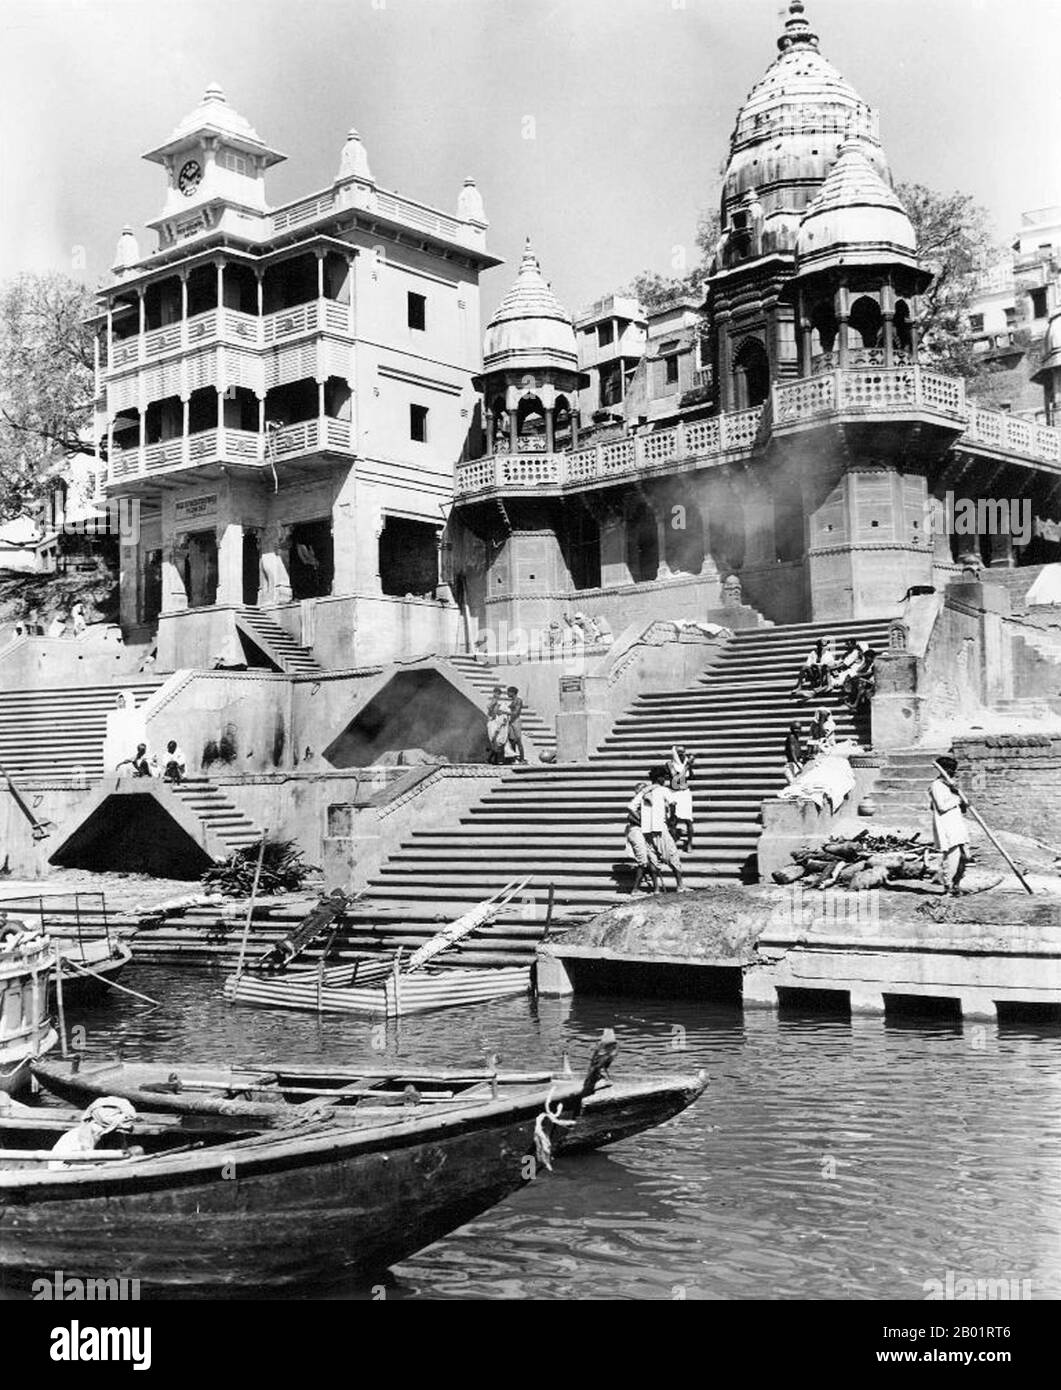 Indien: Manikarnika Ghat, Varanasi (Benares) um 1952. Varanasi, auch bekannt als Banaras oder Benaras, ist eine Stadt am Ufer des Ganges im indischen Bundesstaat Uttar Pradesh, 320 Kilometer (199 mi) südöstlich der Hauptstadt Lucknow. Die Stadt wird von Hindus, Buddhisten und Jains als heilige Stadt angesehen. Es ist eine der ältesten durchgehend bewohnten Städte der Welt und die älteste in Indien. Der Kaschi Naresh (Maharaja von Kaschi) ist der wichtigste Kulturförderer von Varanasi und ein wesentlicher Bestandteil aller religiösen Feiern. Stockfoto